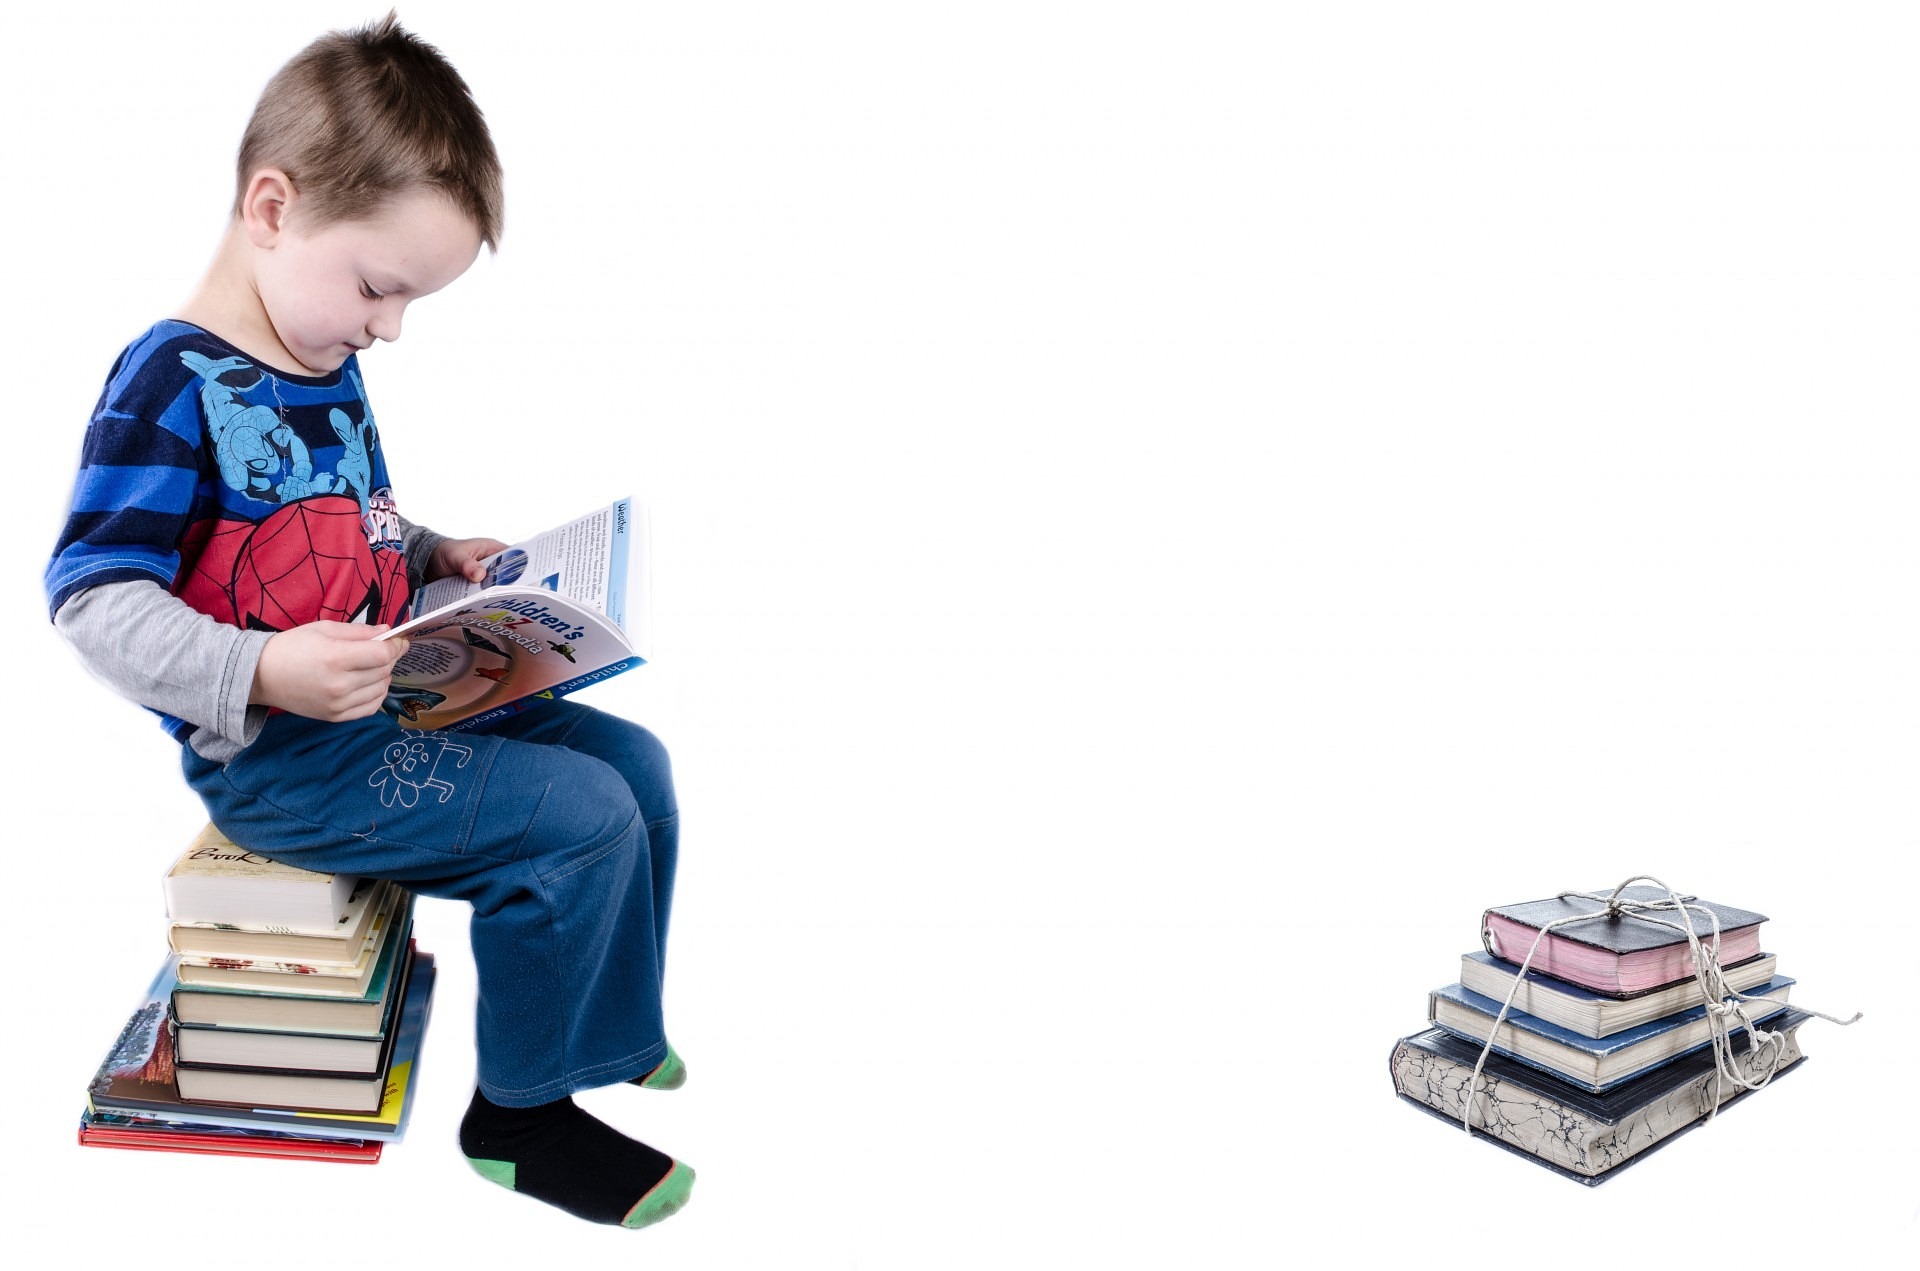 읽을 책들을 쌓아놓고 그 위에 앉아서 책을 읽고 있는 아이와 그 앞에는 다 읽은 책들을 끈으로 묶어 놓고 찍은 사진